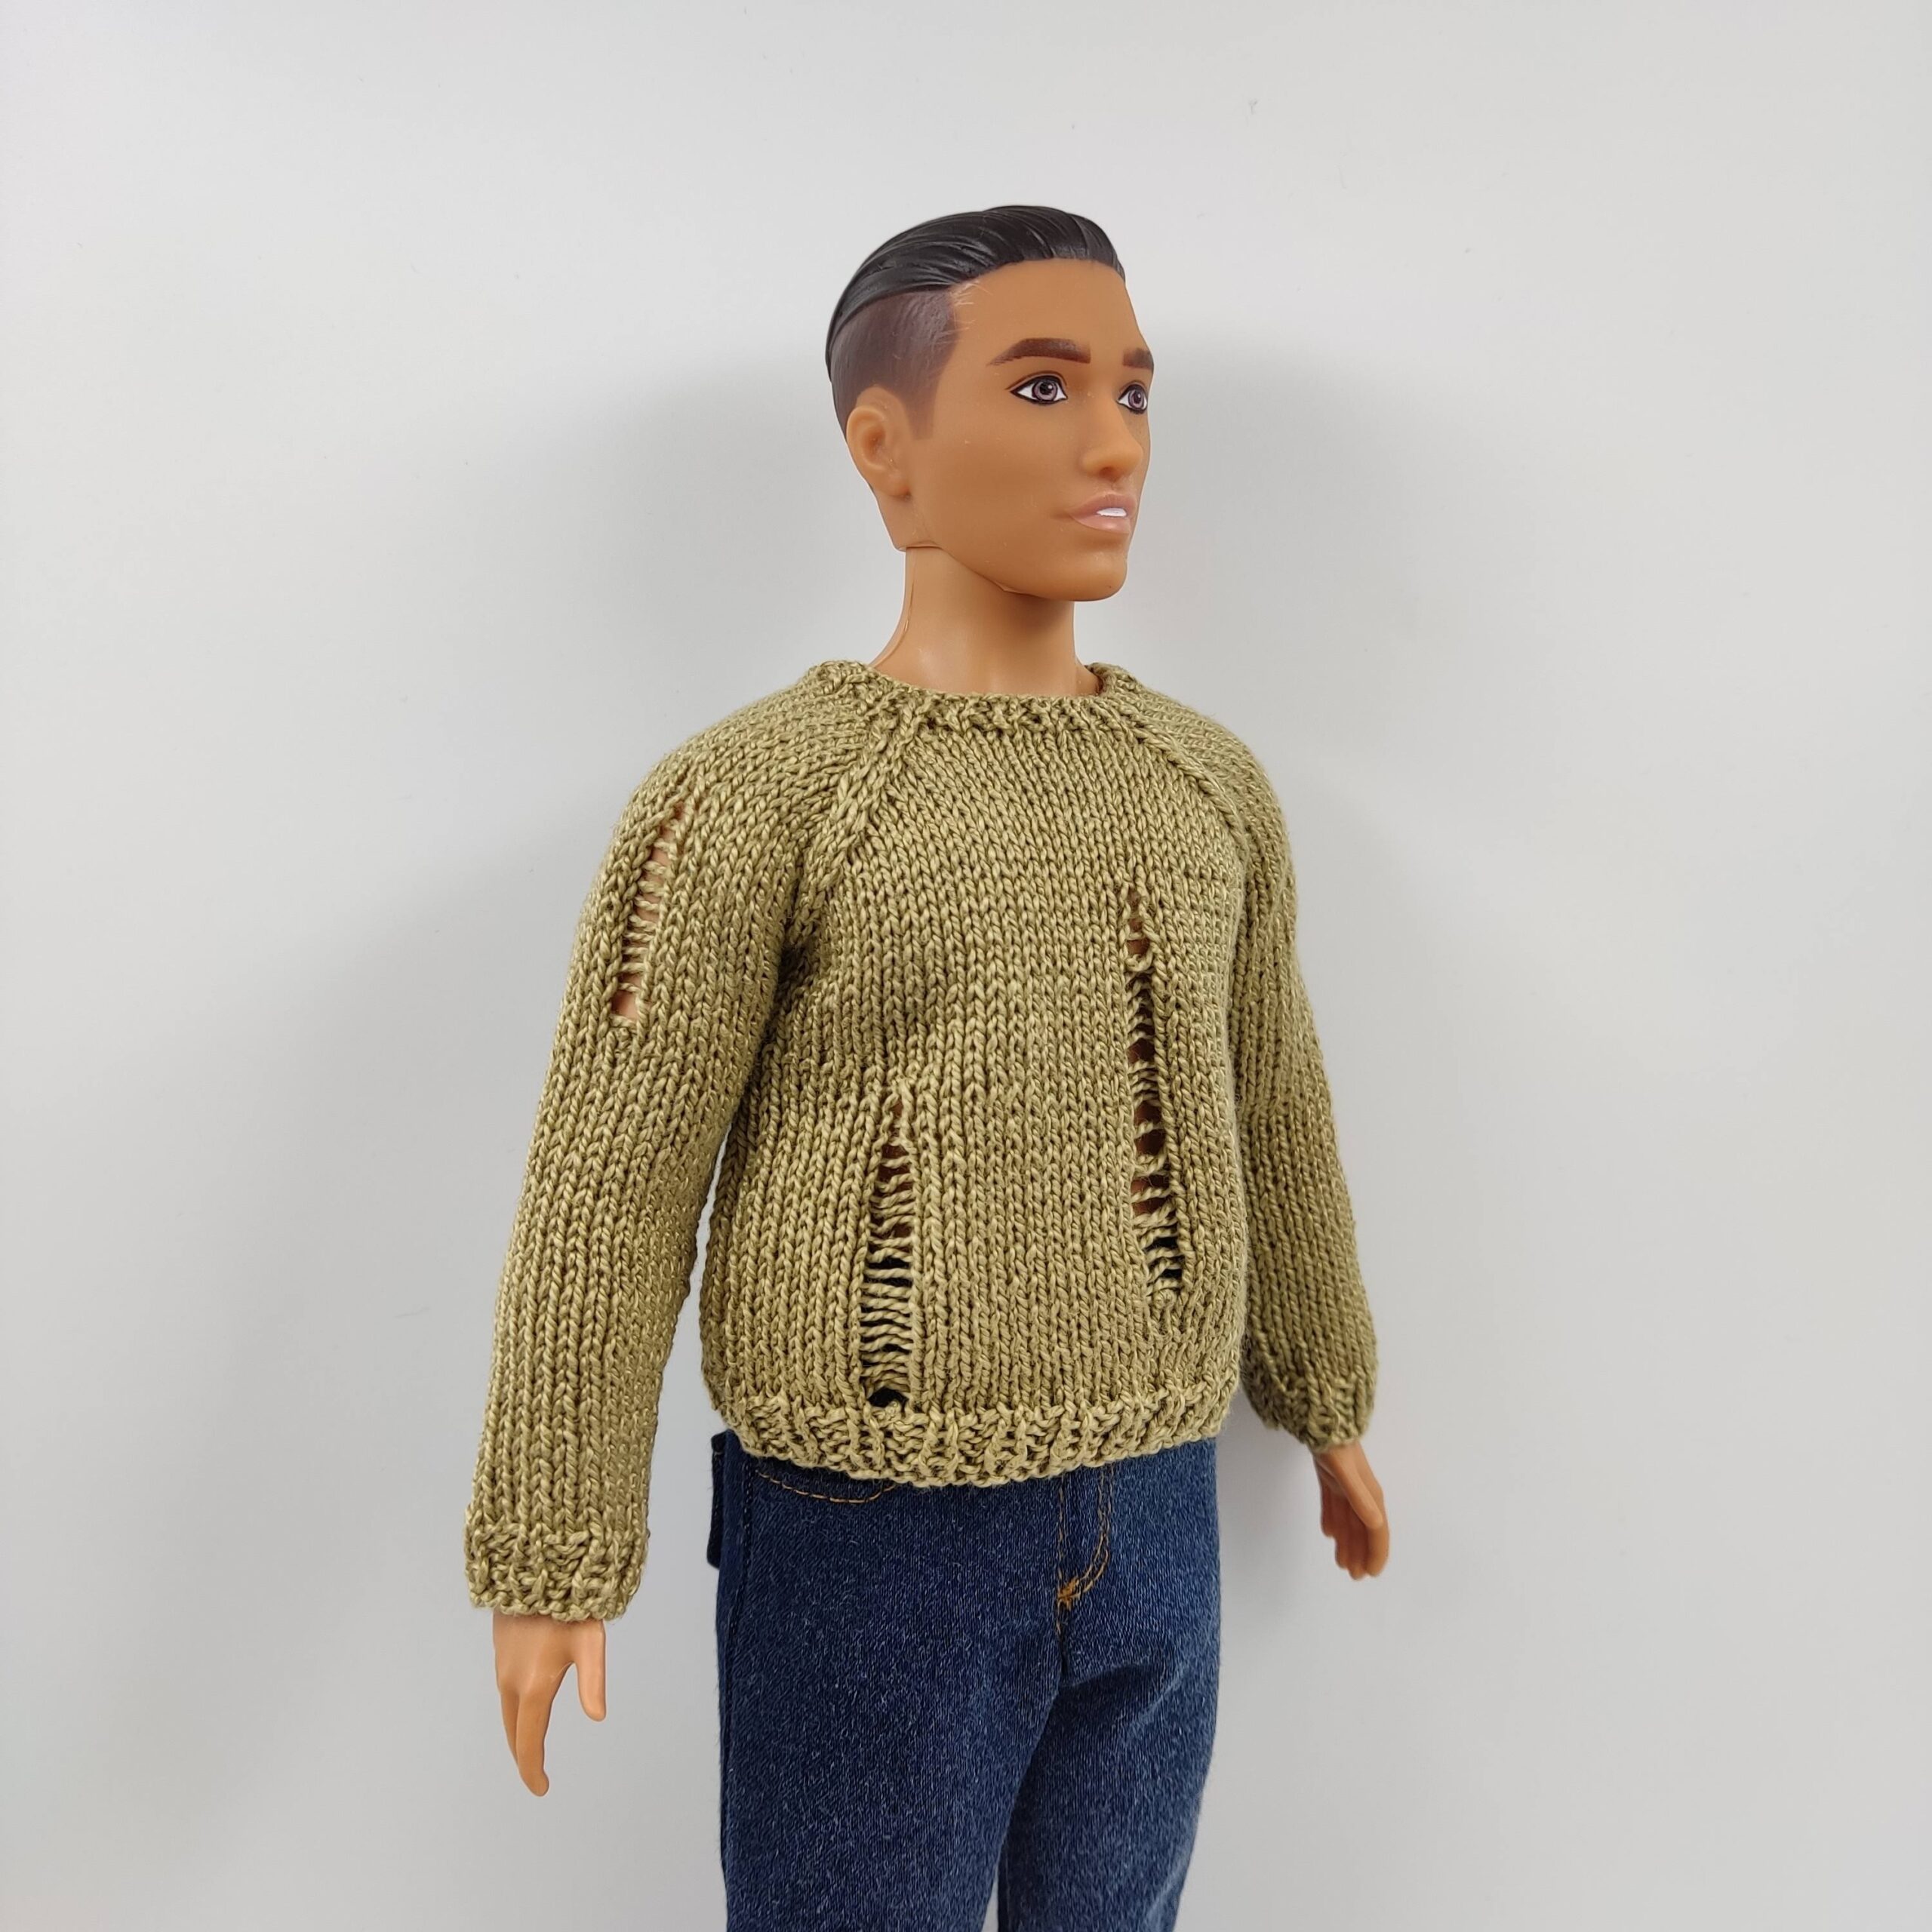 Ken doll clothes, Ken sweater